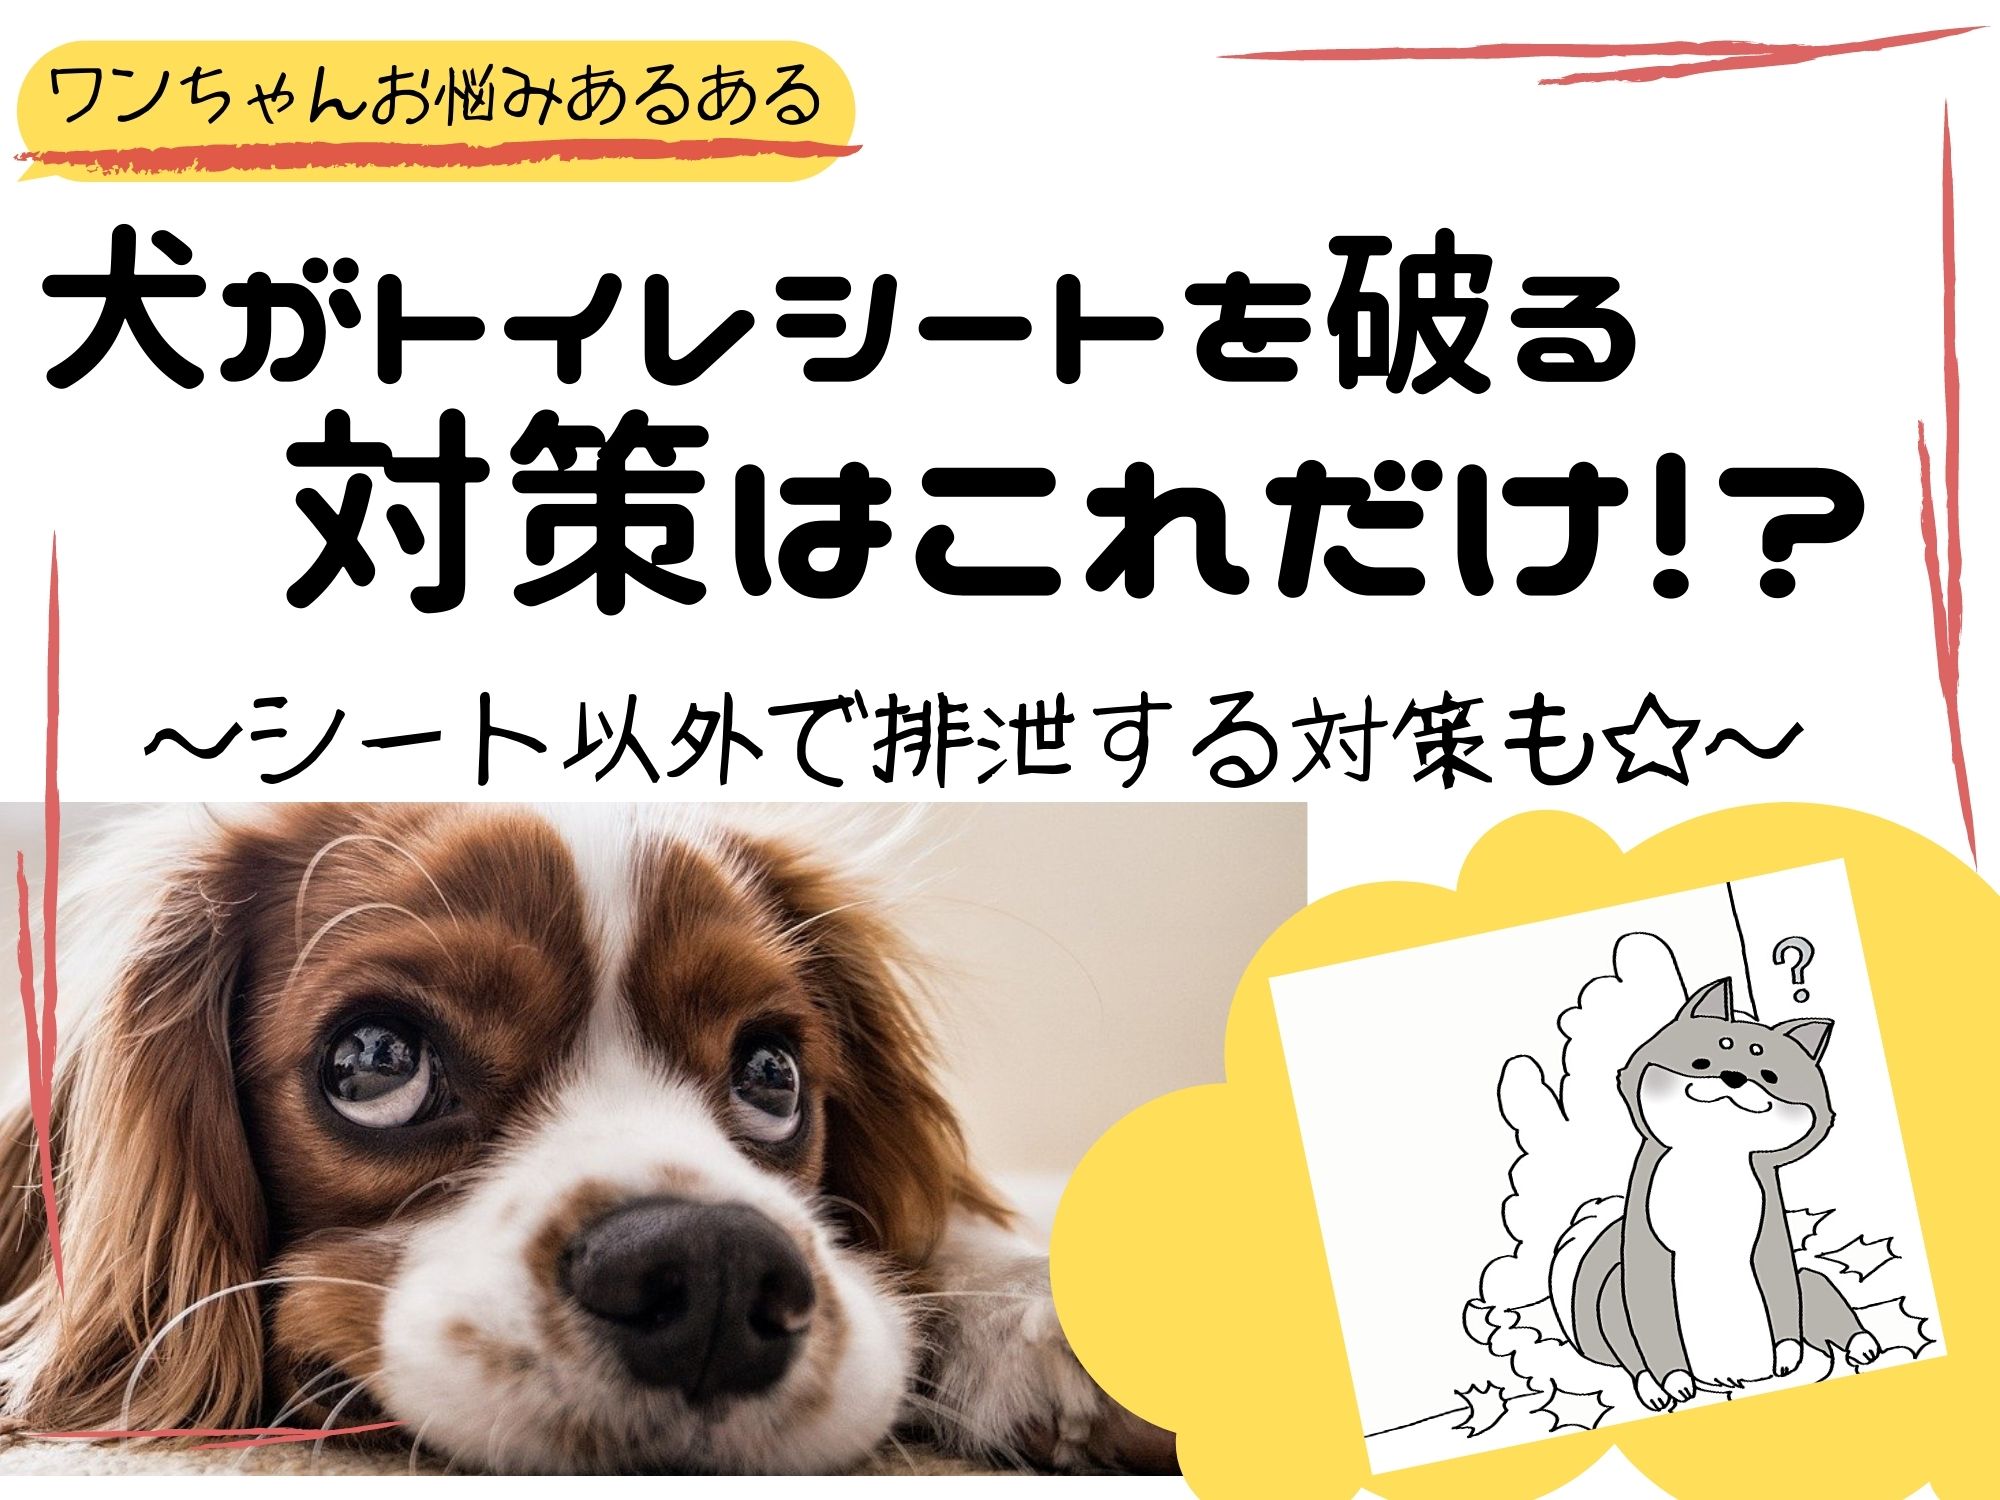 タービン 救い ラップ 子犬 ペット シーツ 食べる Sasaki Hone Jp